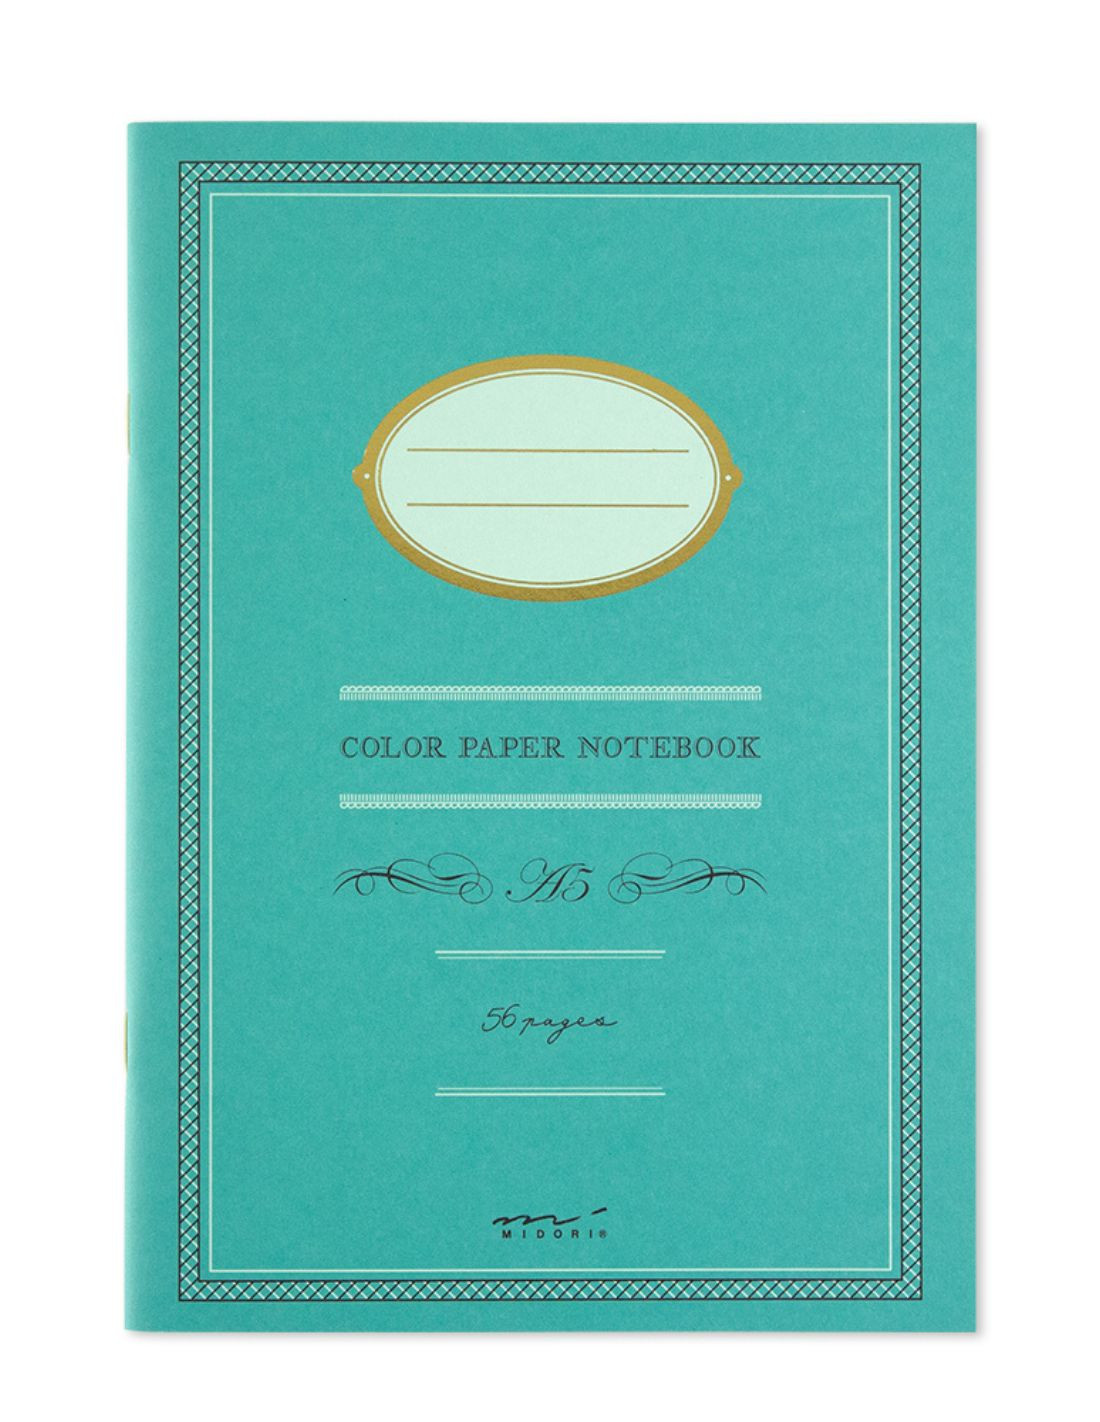 Cahier A5 ligné - Papier coloré - Bleu - Midori|Papeterie Makkura